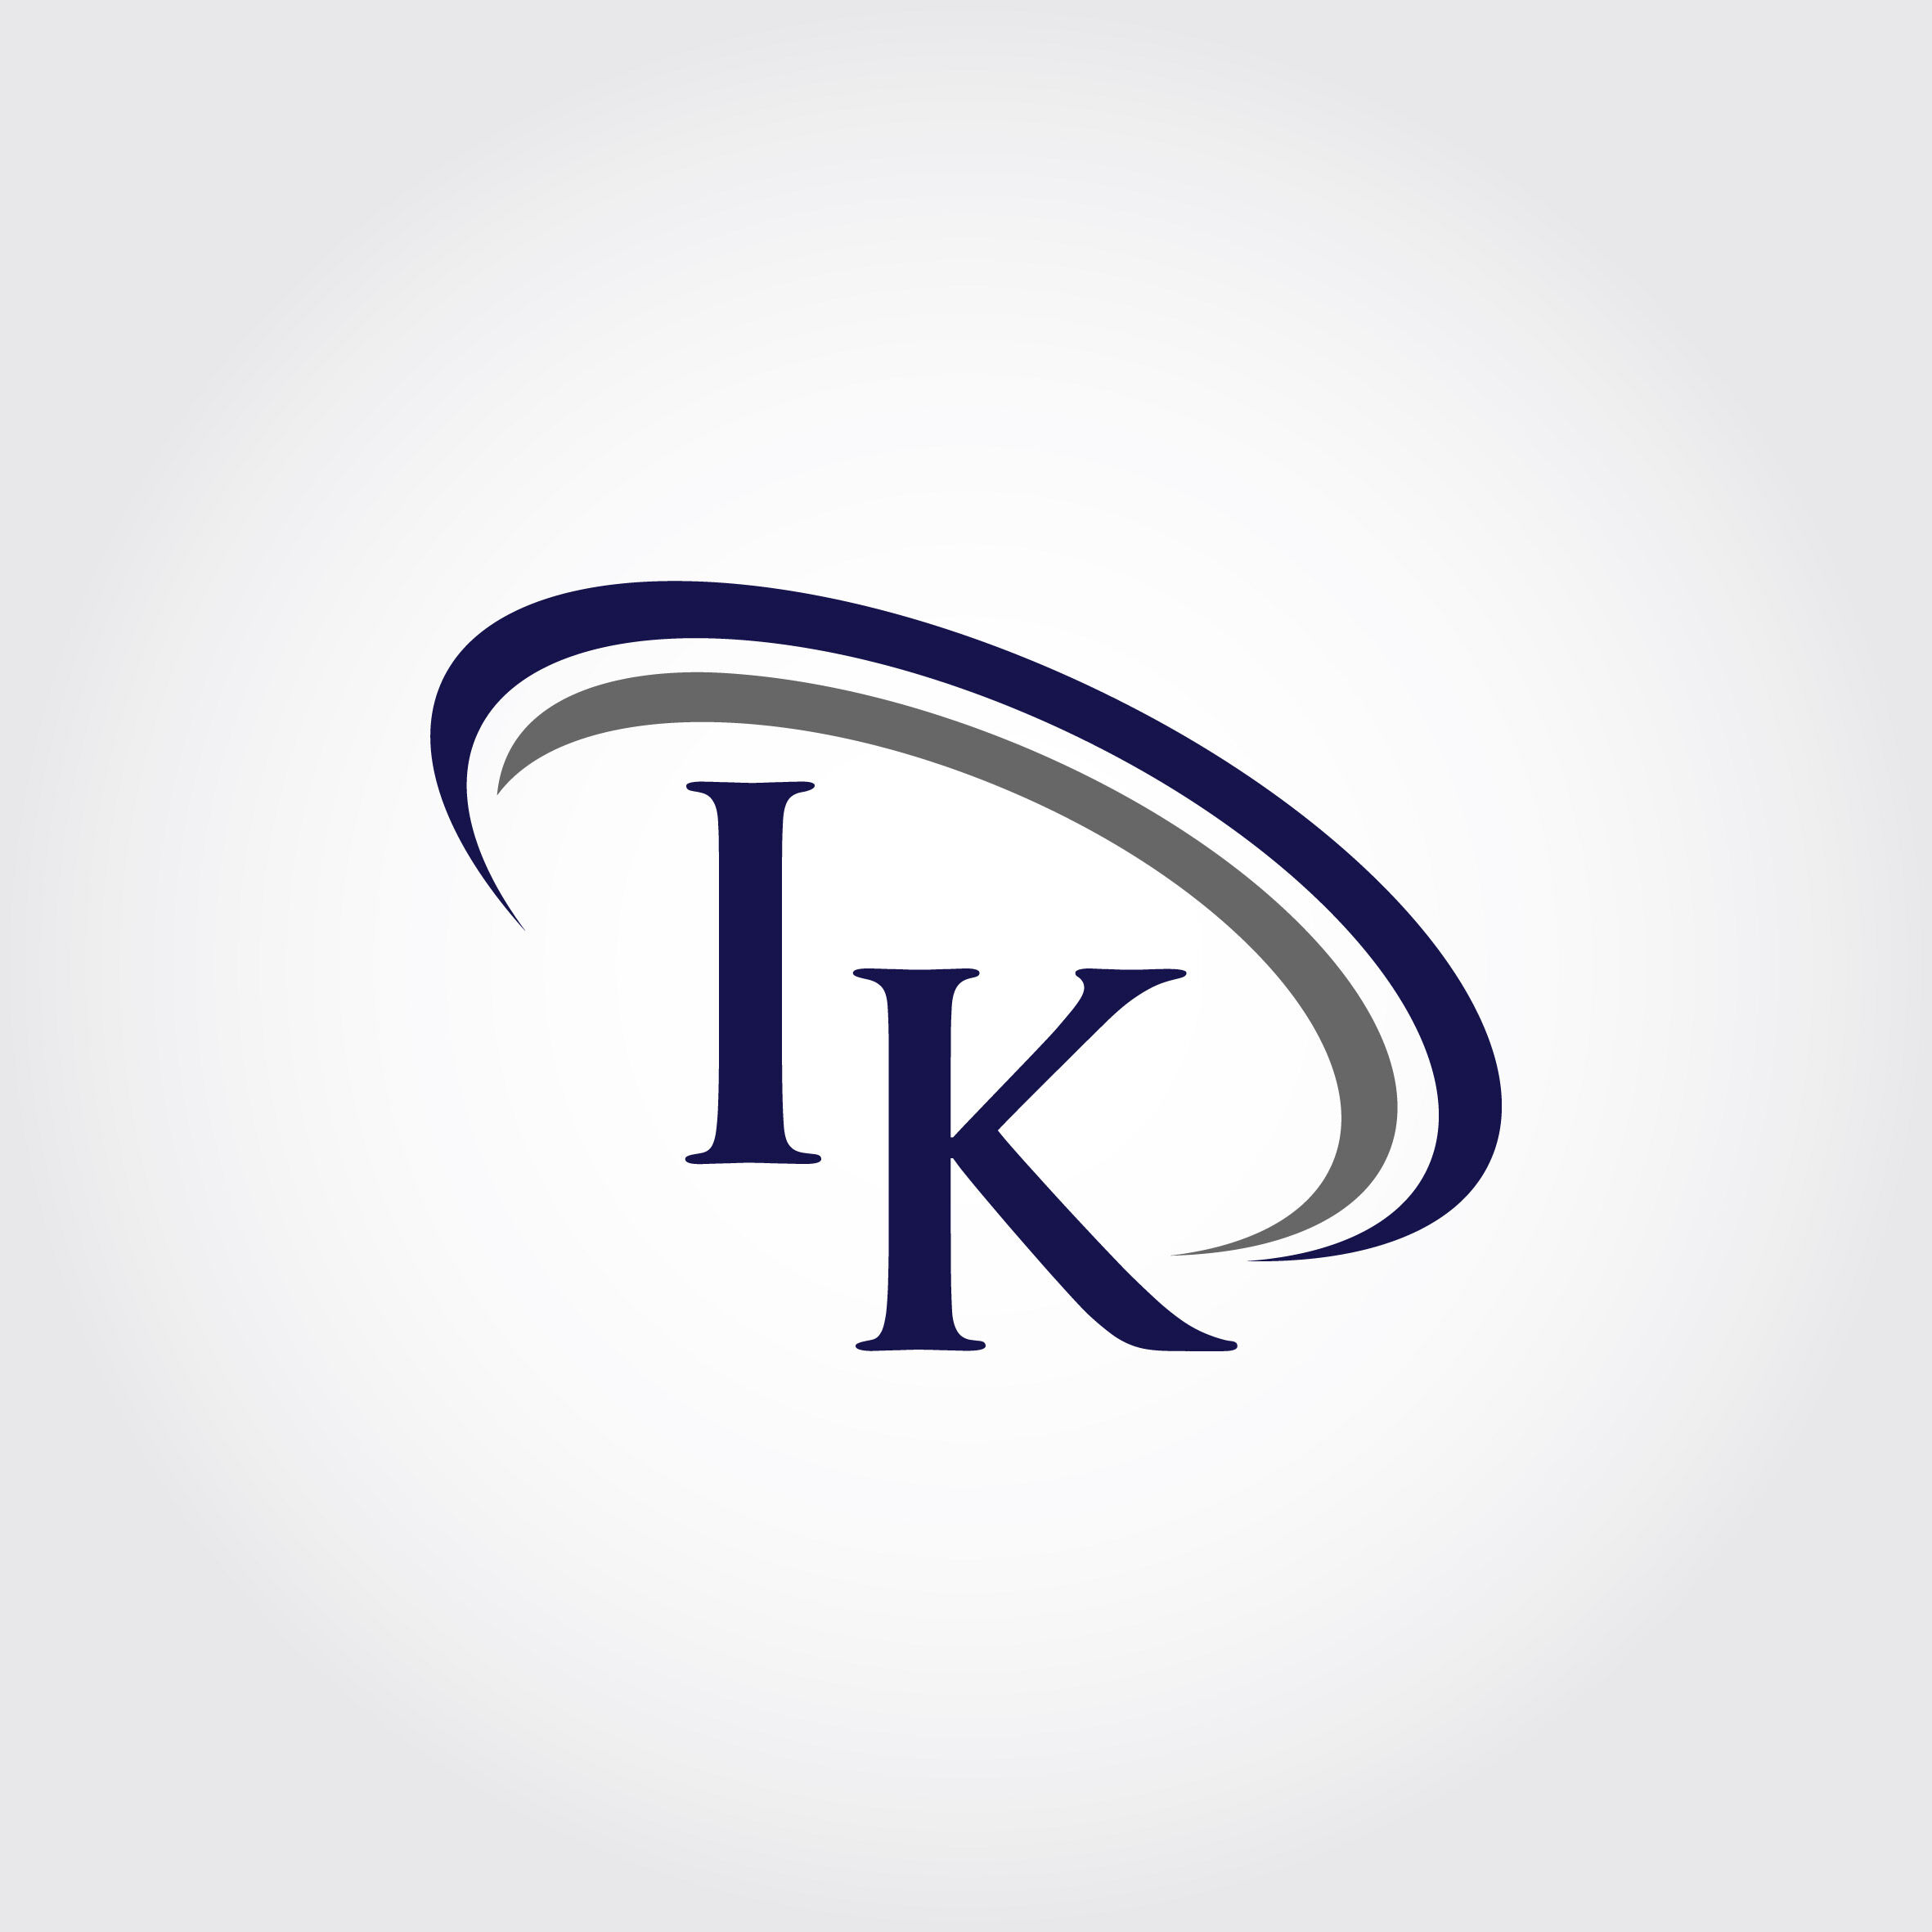 Monogram IK Logo Design By Vectorseller